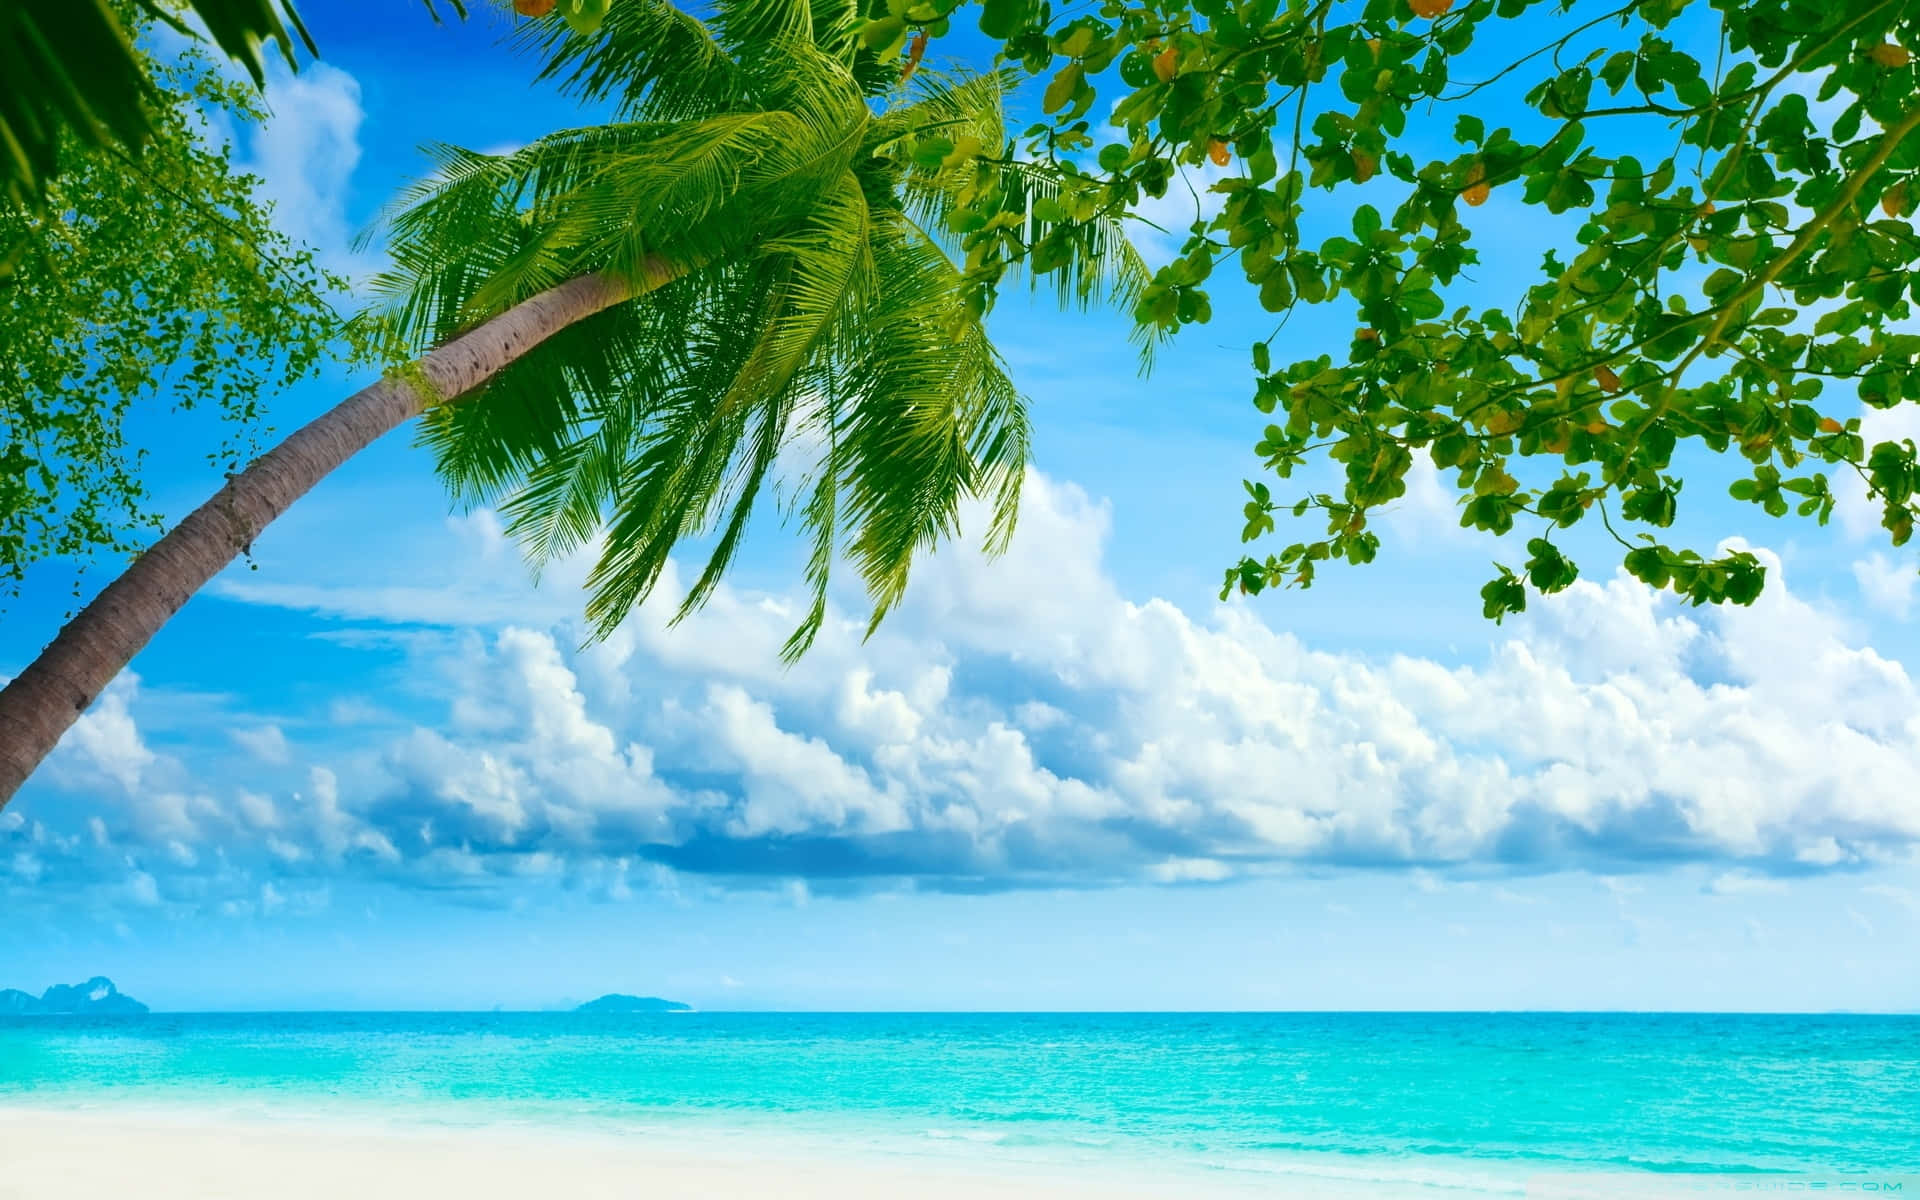 Unaescena Simplemente Impresionante De Una Playa Tropical Con Cabañas De Playa, Palmeras Y Agua Cristalina De Color Azul. Fondo de pantalla